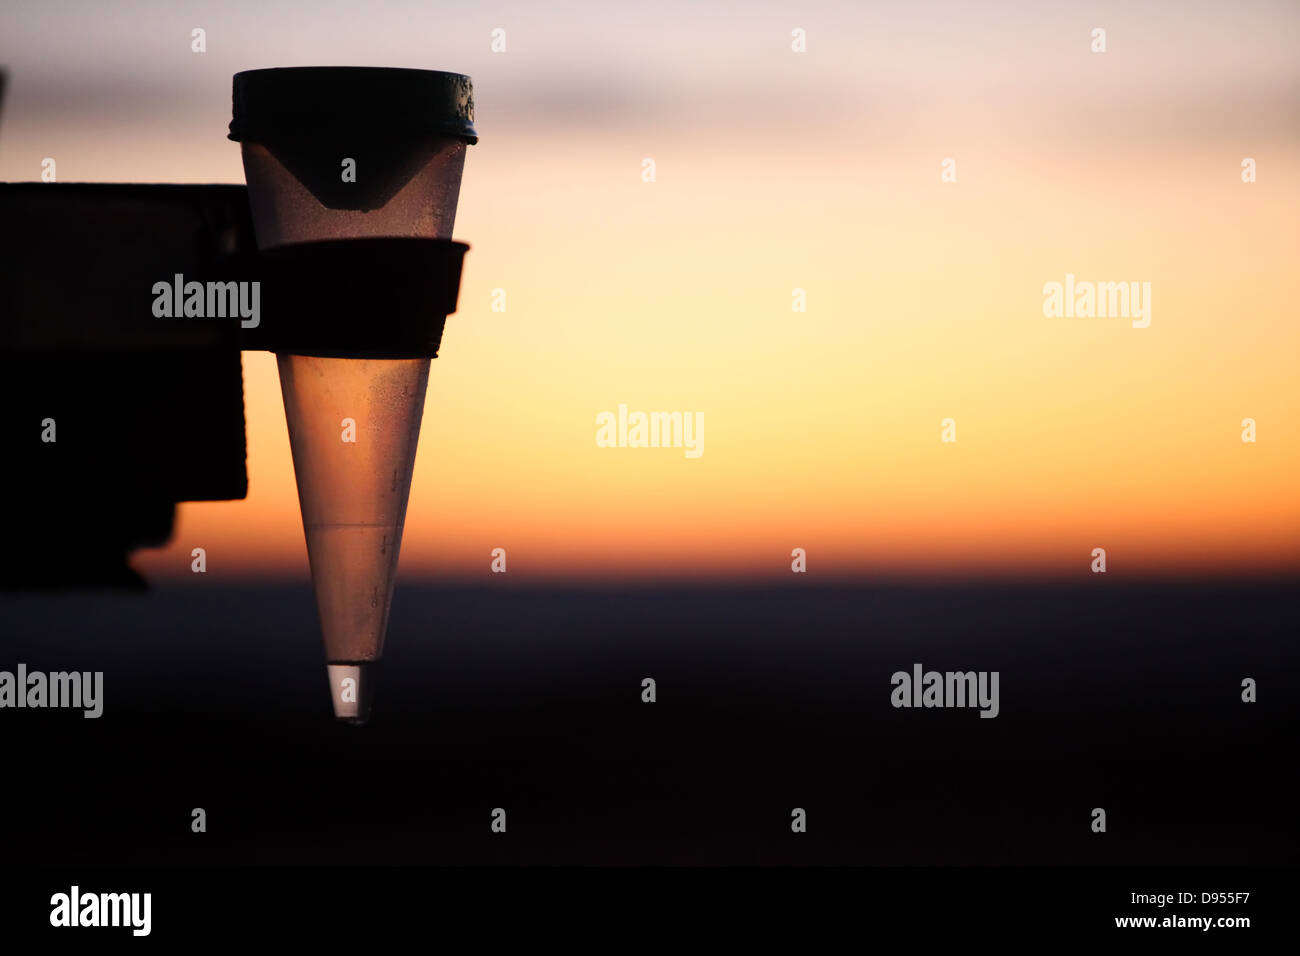 Foto de una silueta de un medidor de lluvia o medidor de lluvia tomadas al amanecer con colores dorados en el fondo. Foto de stock